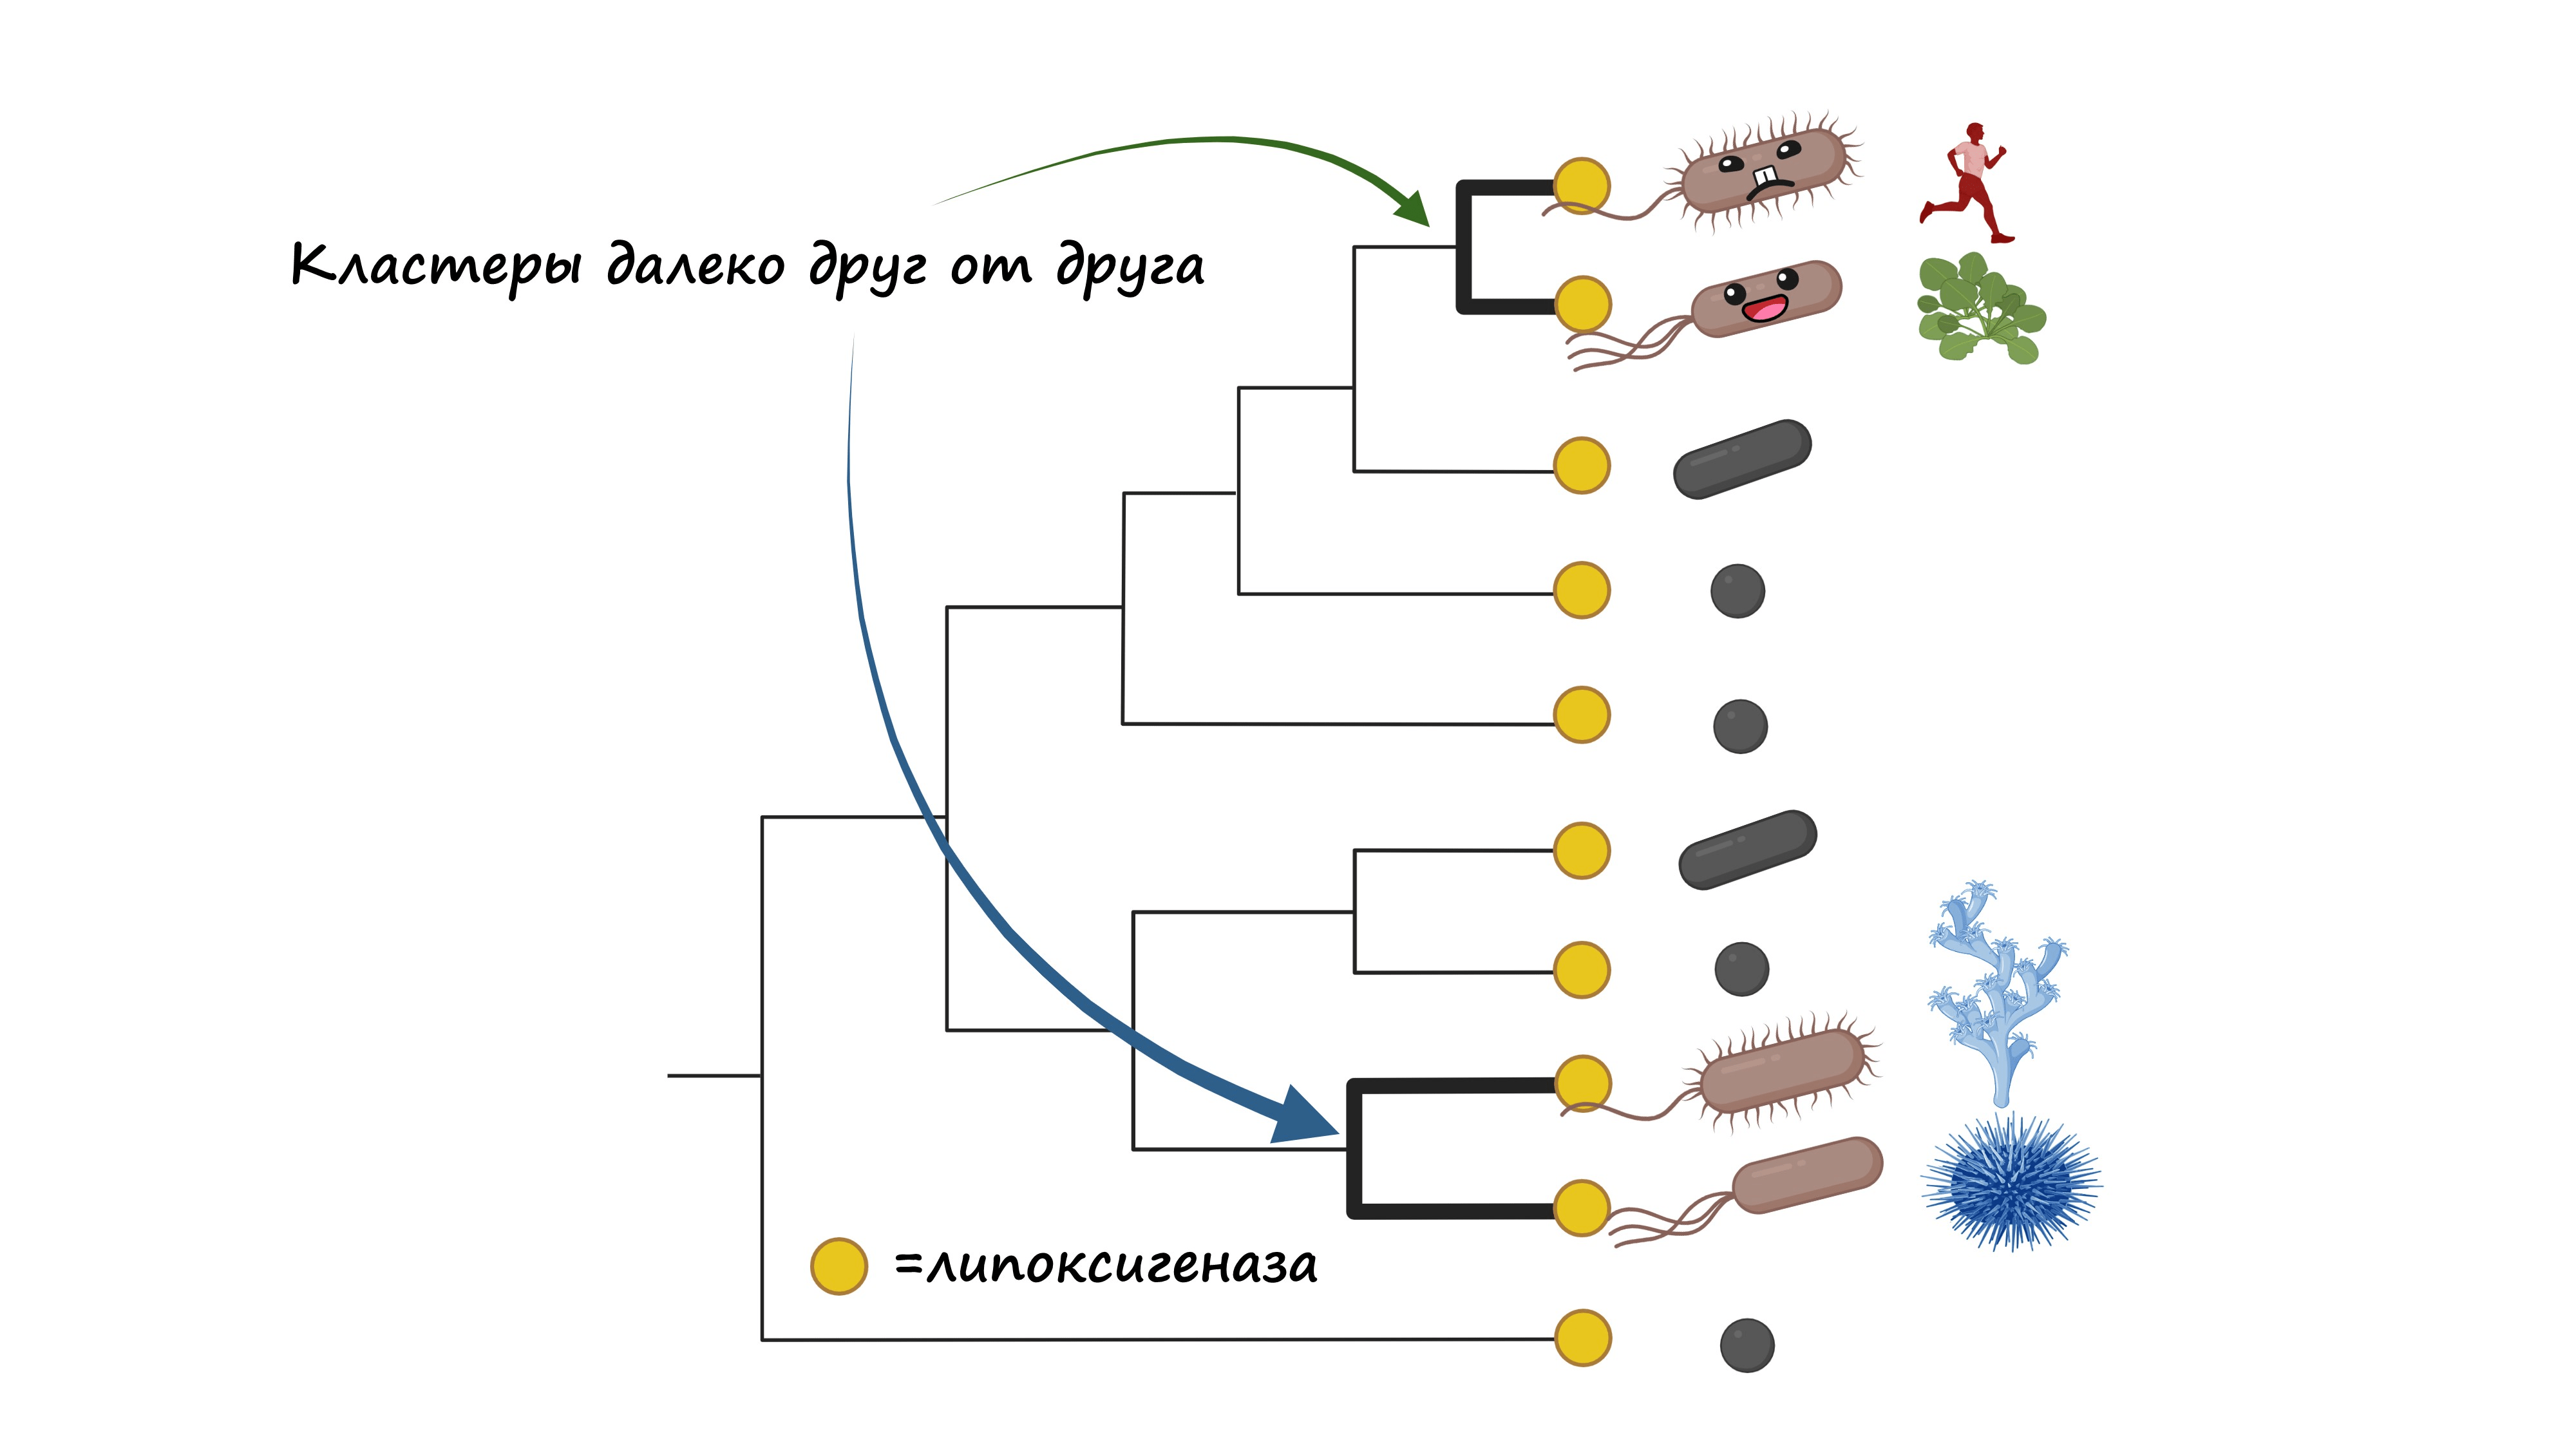 Это тоже упрощенное изображение филогении бактериальных липоксигеназ и их связи с экологической ролью бактерий